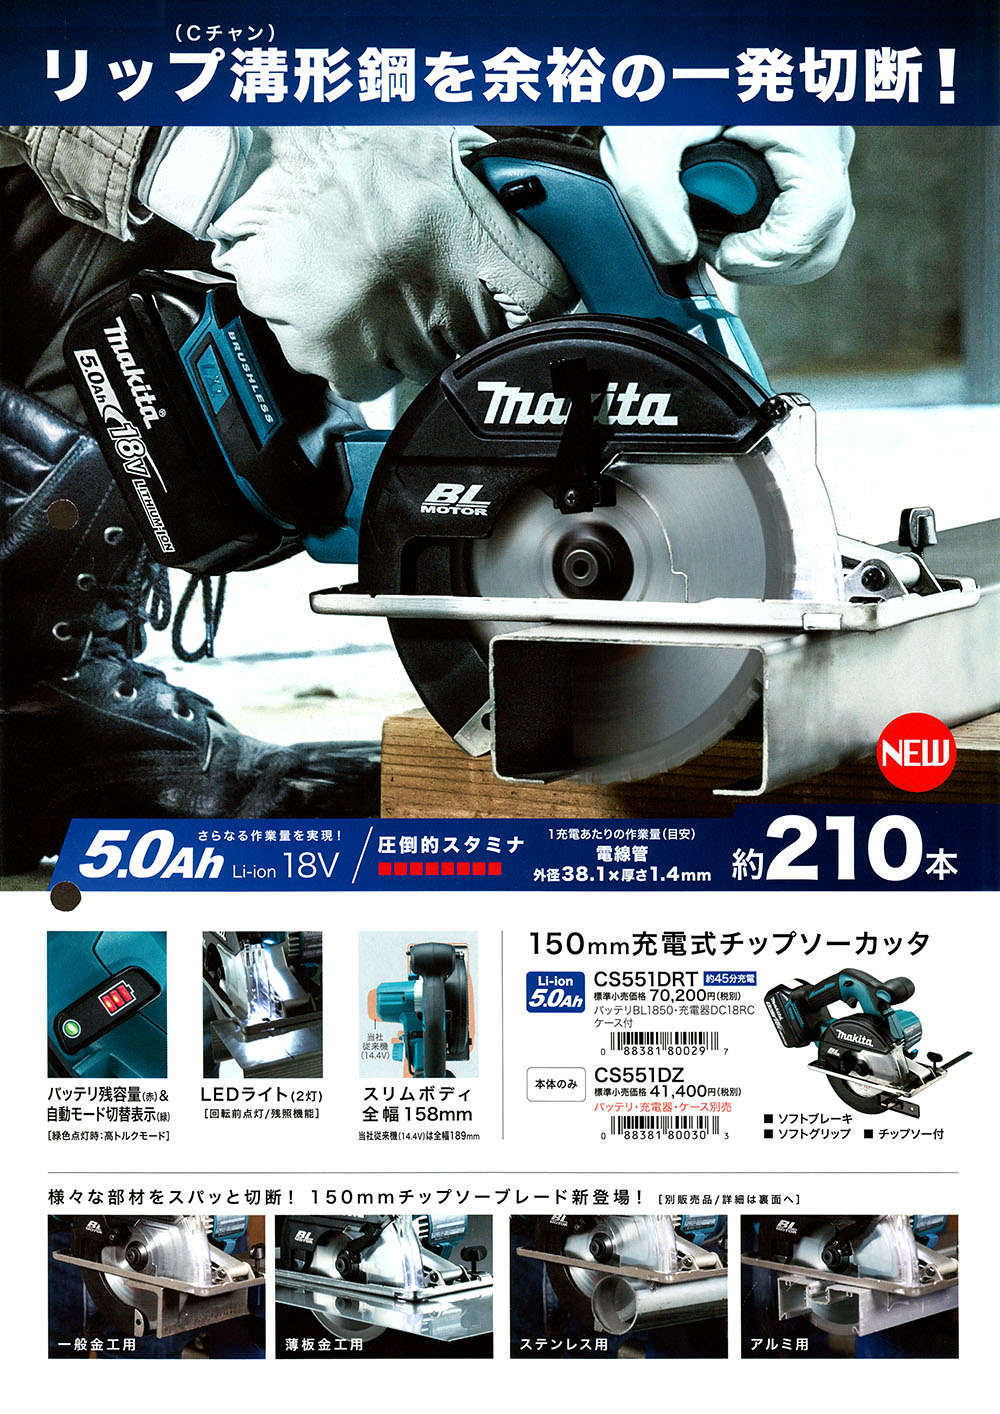 マキタ 150mm充電式チップソーカッター CS551DRT 丸甲金物株式会社